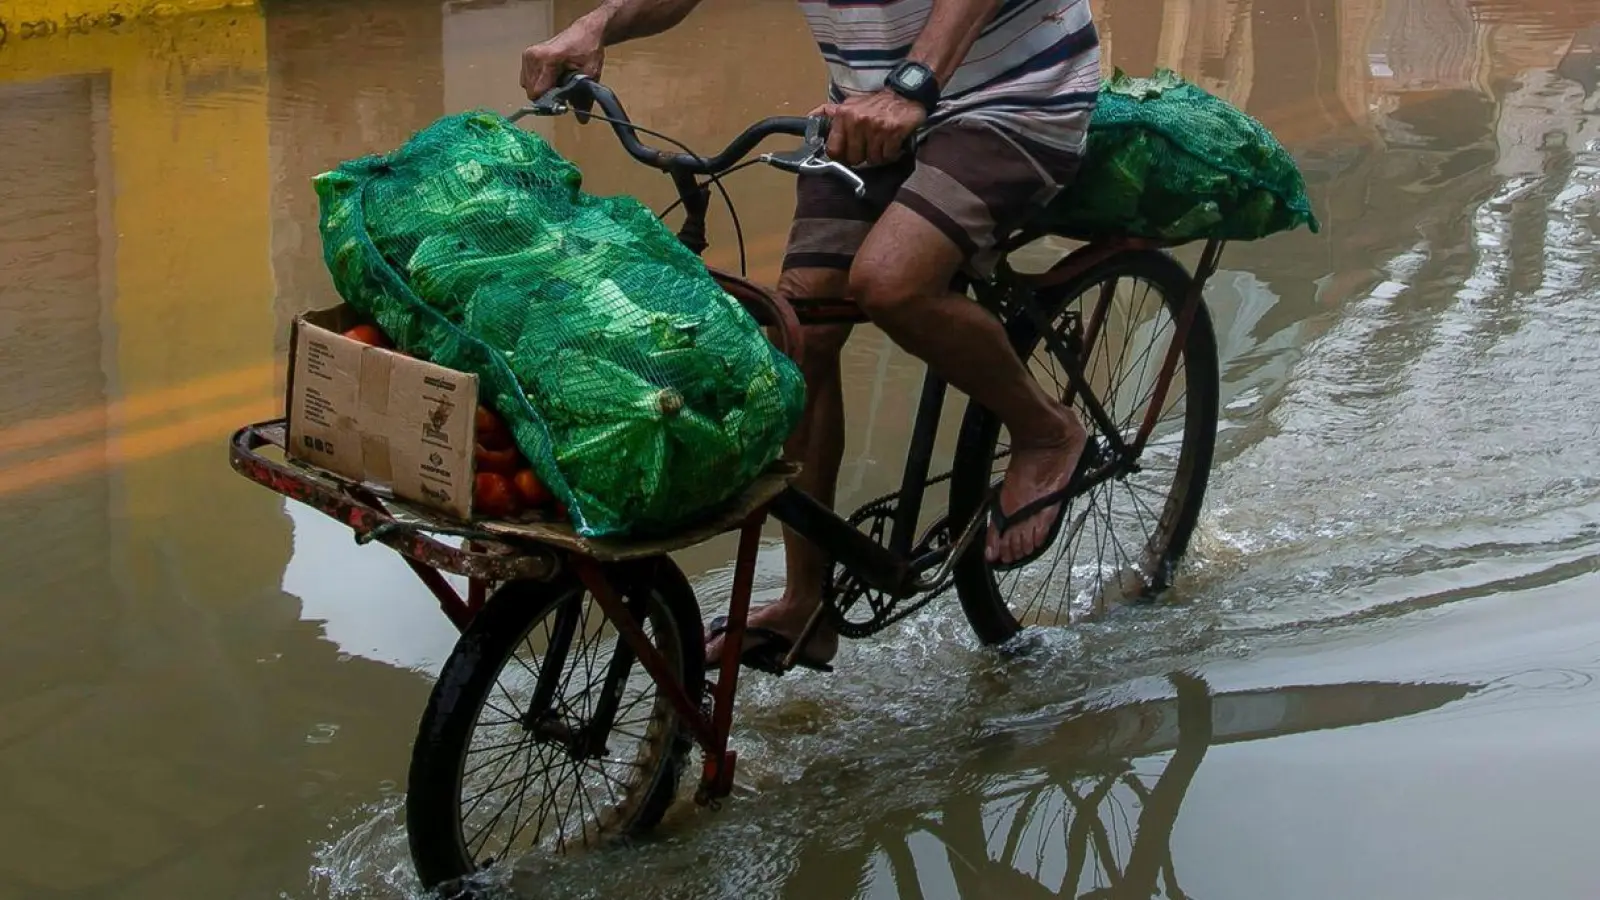 Mit Kraft voran: Durch überflutete Straßen kämpft sich ein Mann auf seinem Fahrrad. <br>Seit der Nacht zu Samstag verwüsteten schwere Unwetter und starke Regenfälle den Südosten Brasiliens, mindestens 23 Personen kamen ums Leben. (Foto: Bruna Prado/AP/dpa)